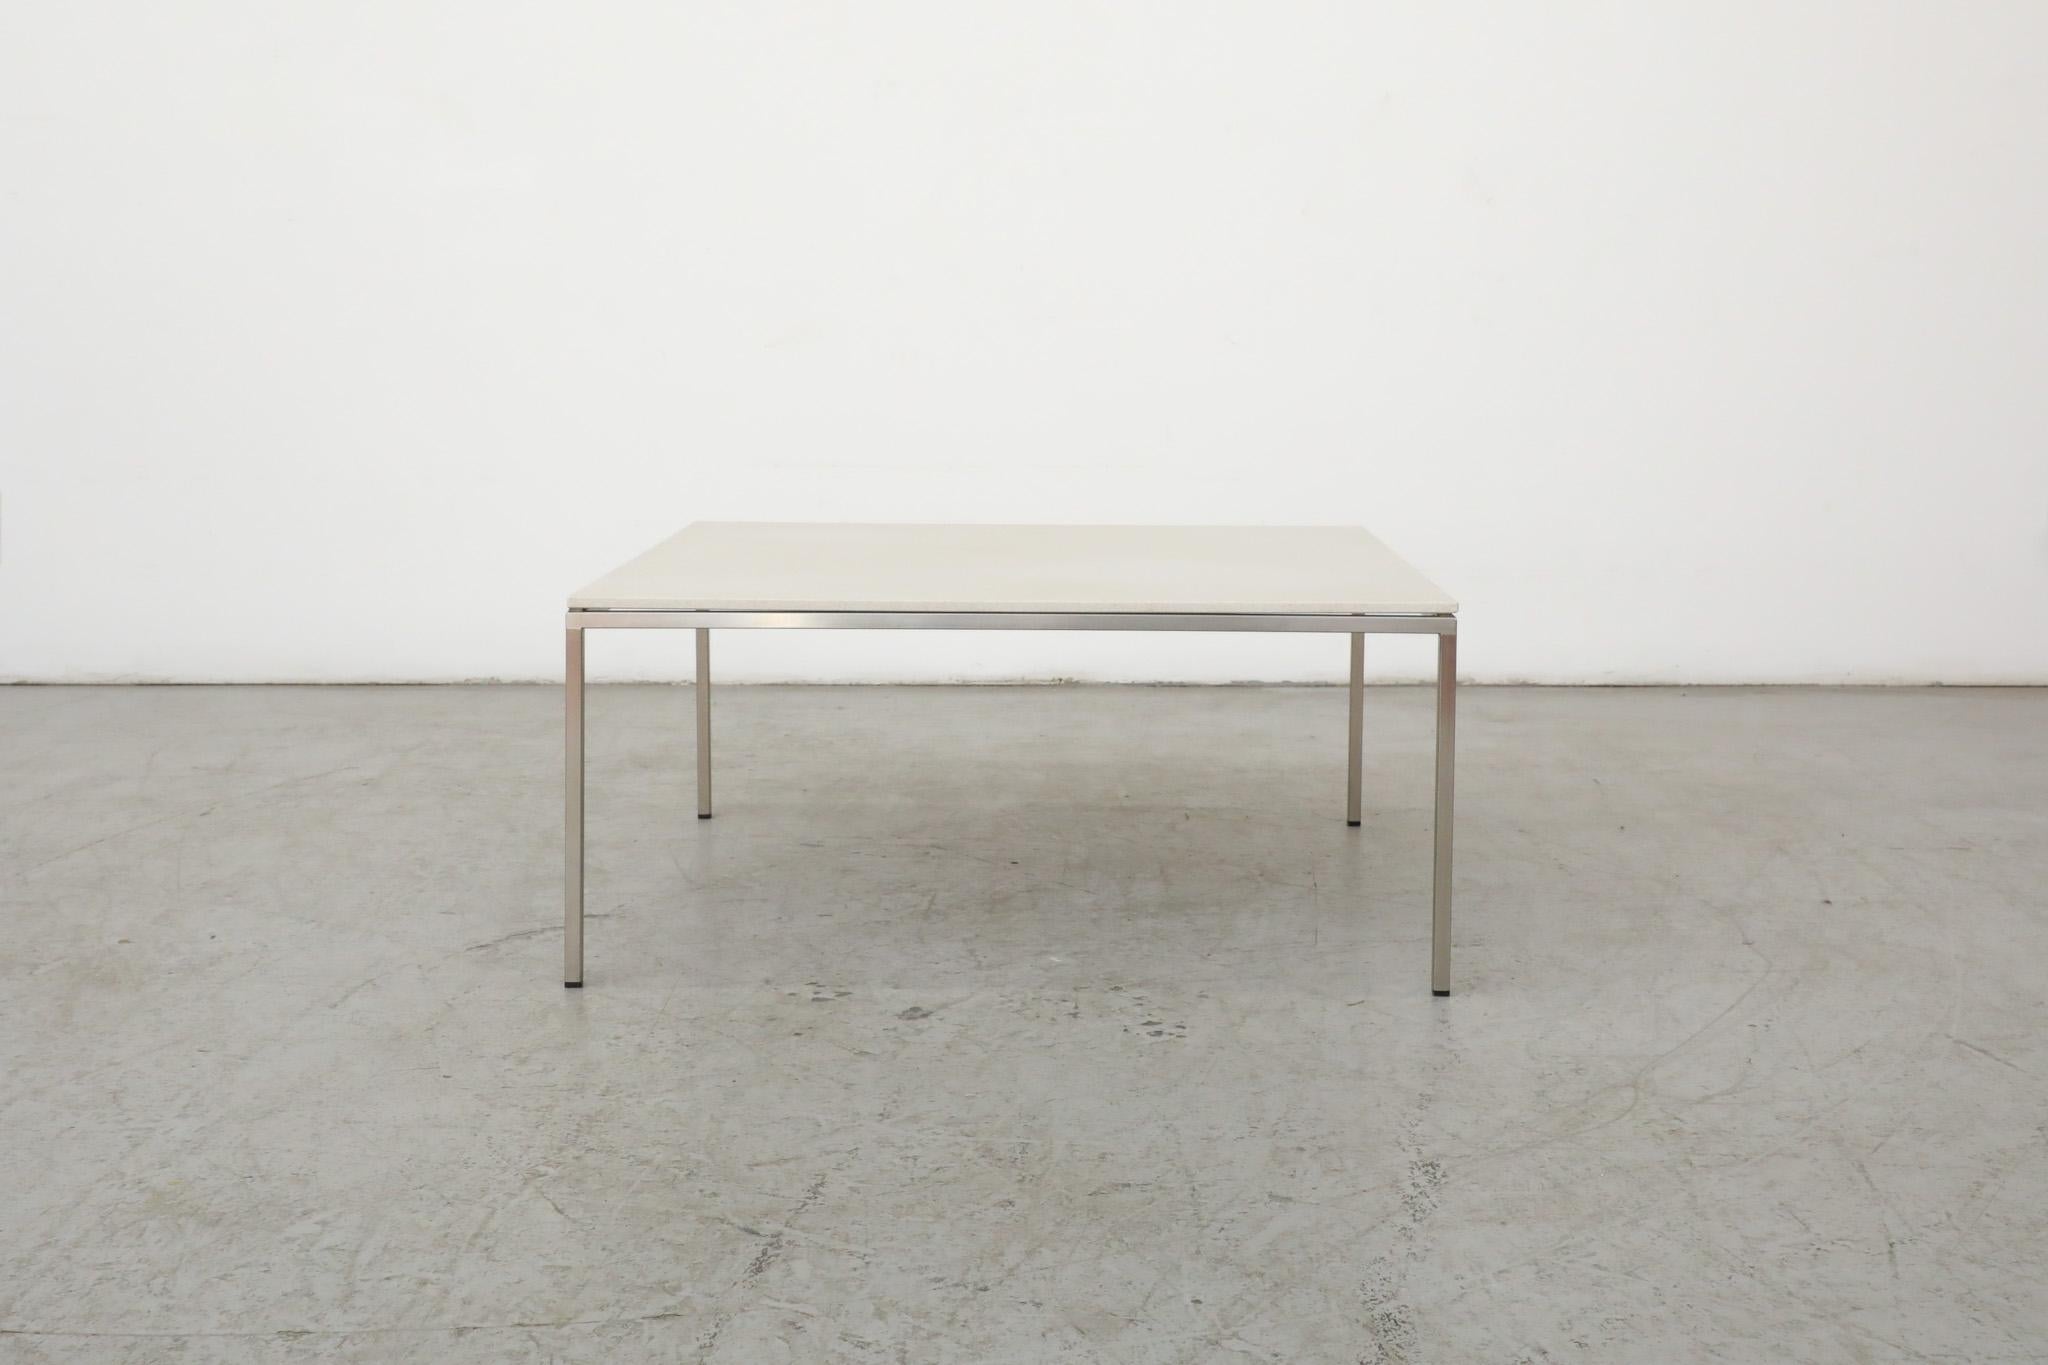 Table basse carrée du milieu du siècle dernier, attribuée au fabricant de meubles néerlandais Metaform, avec un plateau en pierre blanche et une structure chromée minimaliste. Un design magnifique et épuré qui s'intégrerait parfaitement à tout